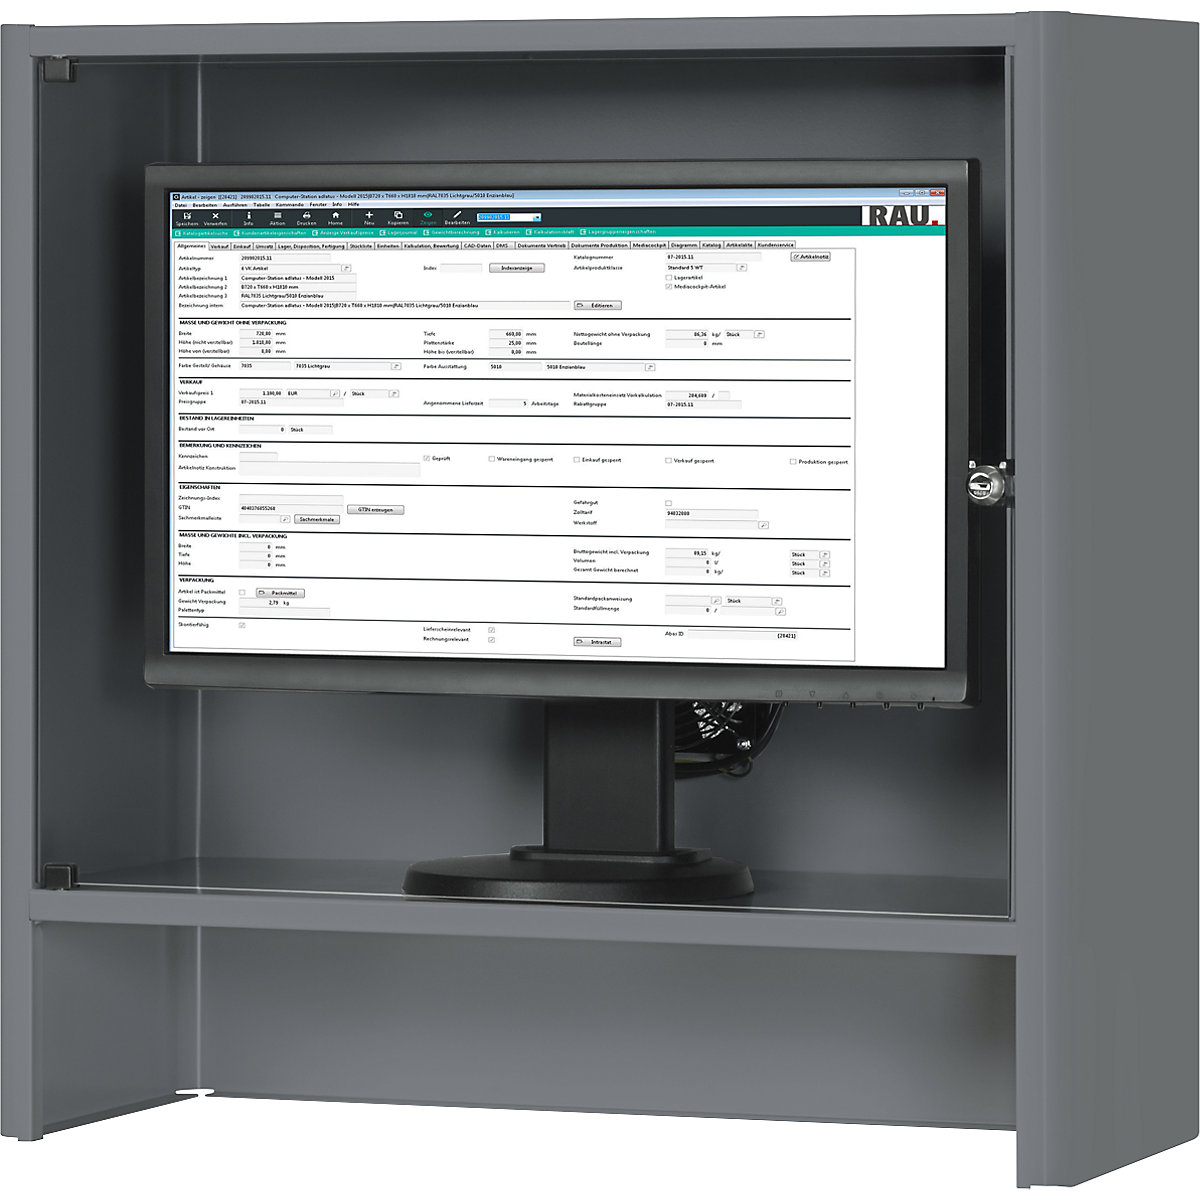 RAU – Caixa para monitor com ventilador ativo integrado (Imagem do produto 4)